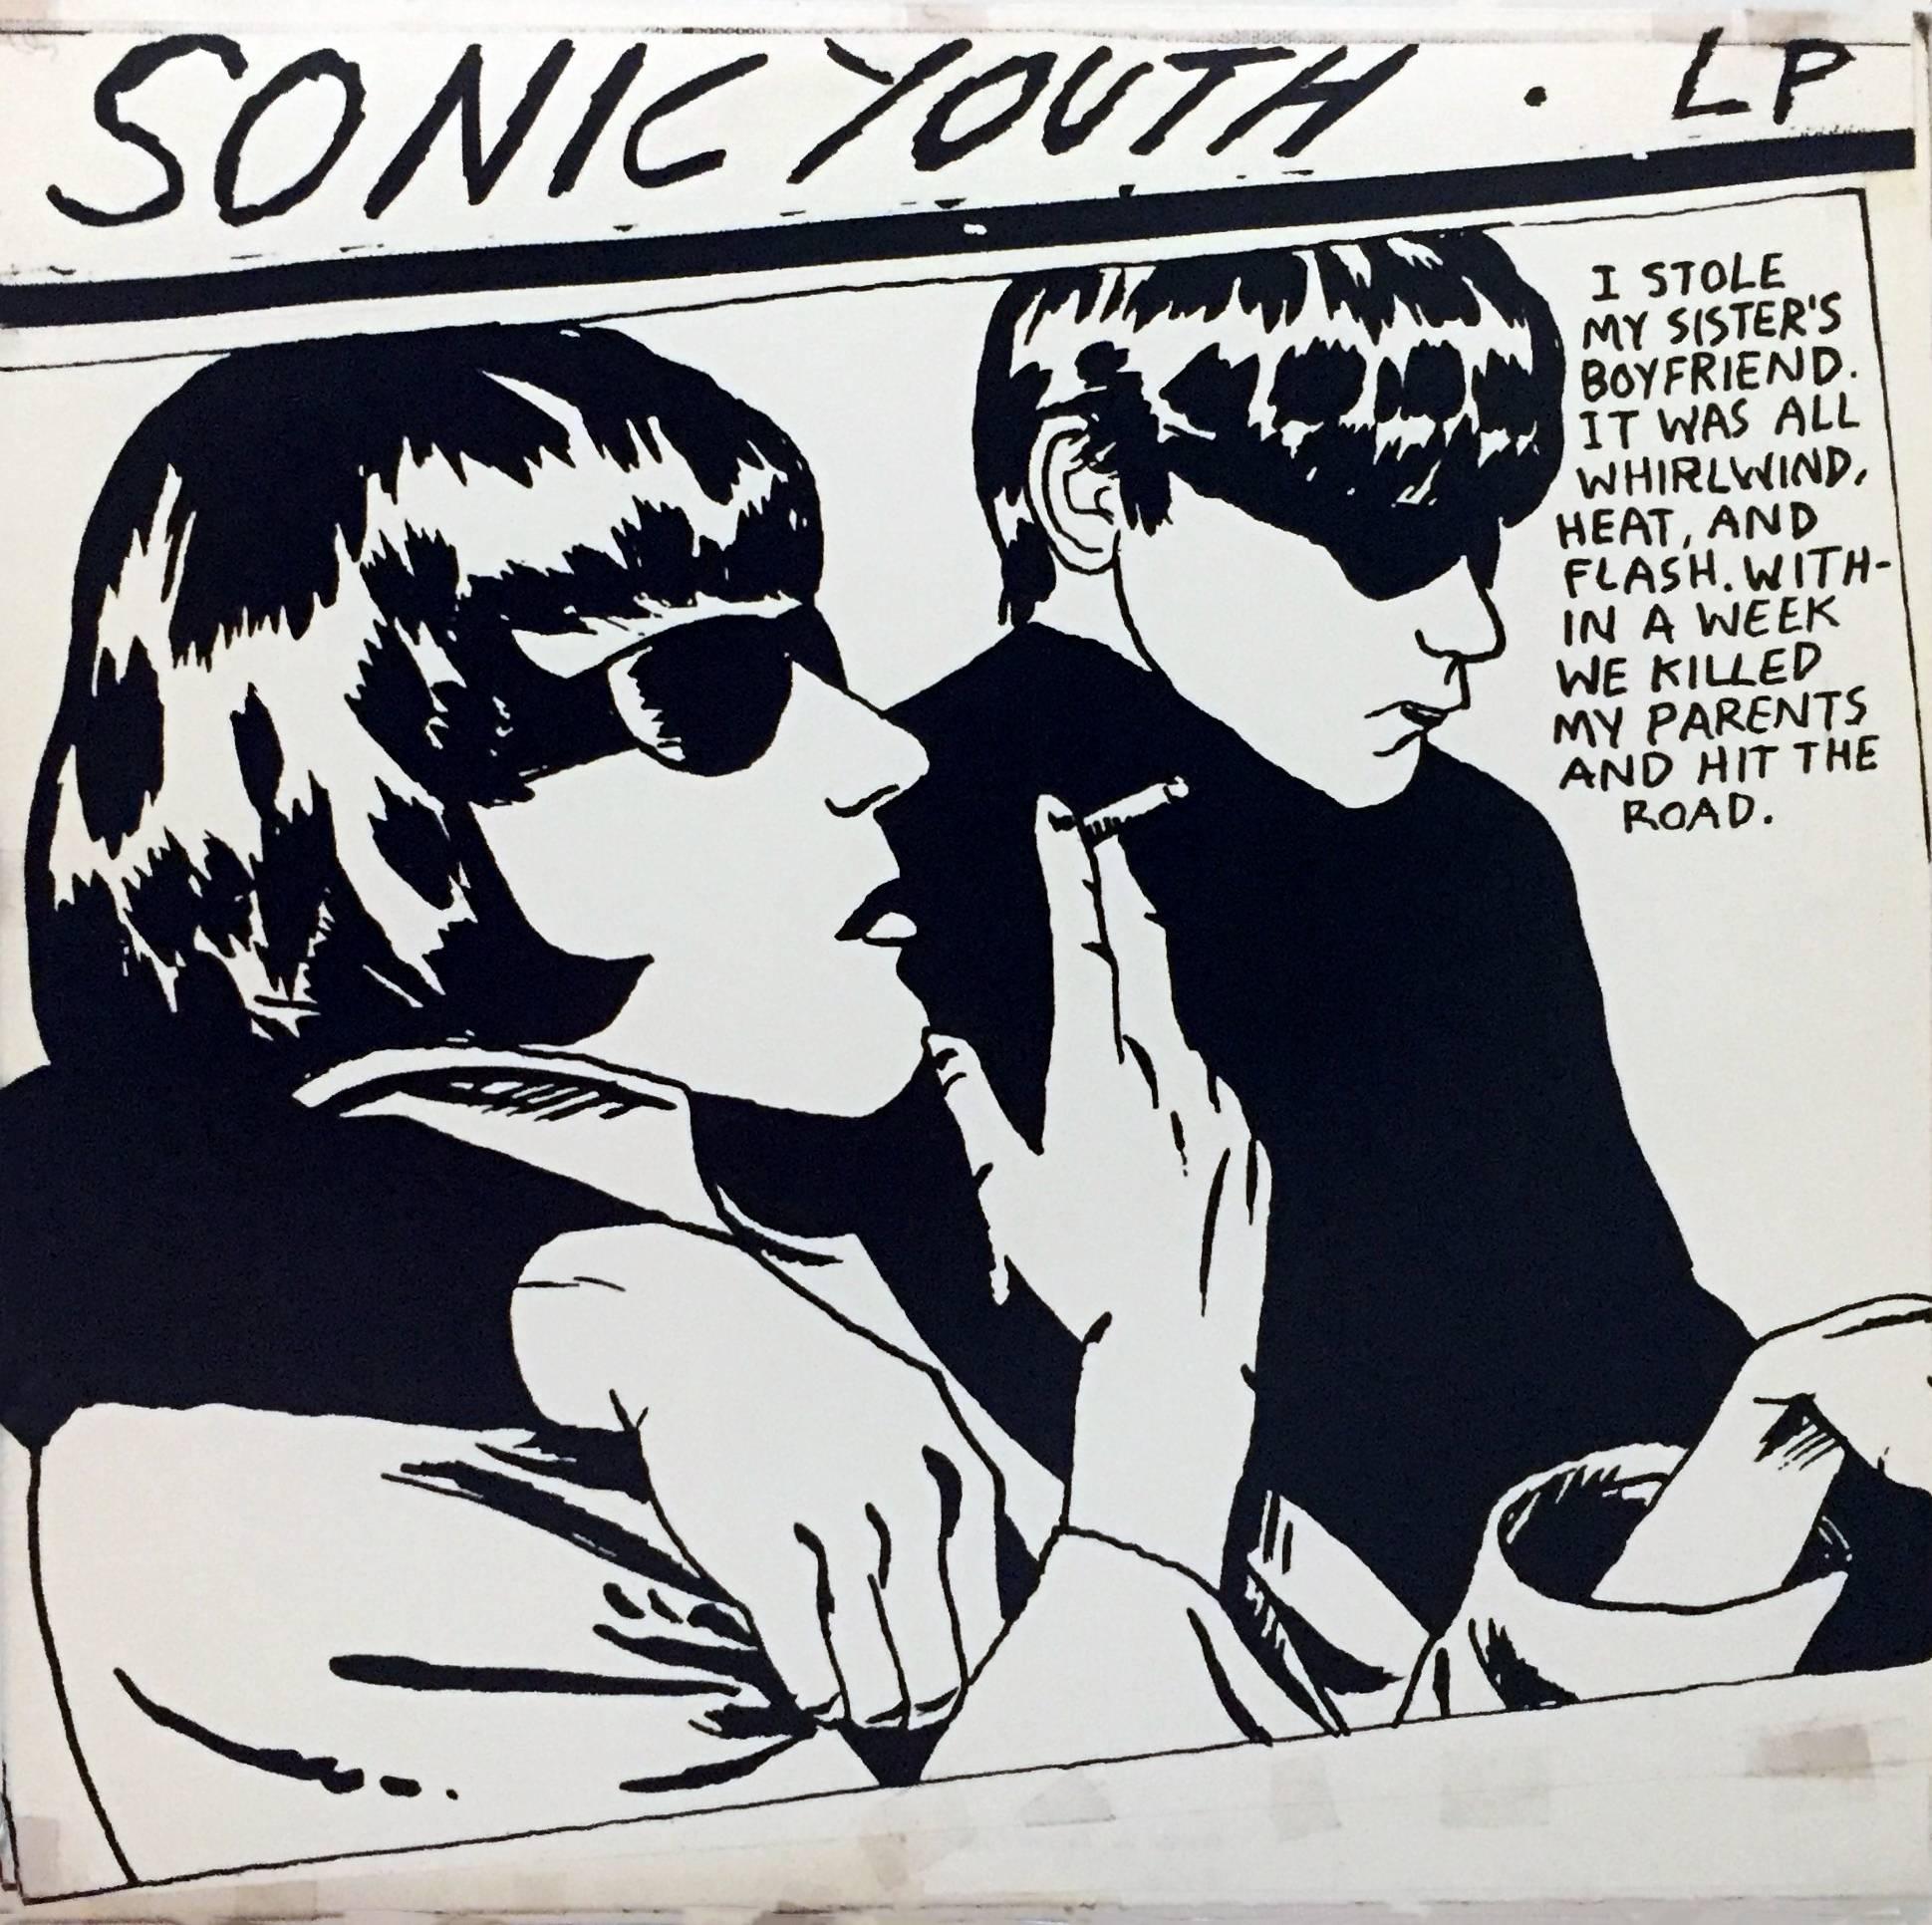 Raymond Pettibon La pochette de disque de Sonic Youth :
Sonic Youth Goo ; première impression européenne originale, 1990

La plus emblématique de toutes les images liées à la musique de Pettibon, ainsi que l'une des pochettes de disques les plus